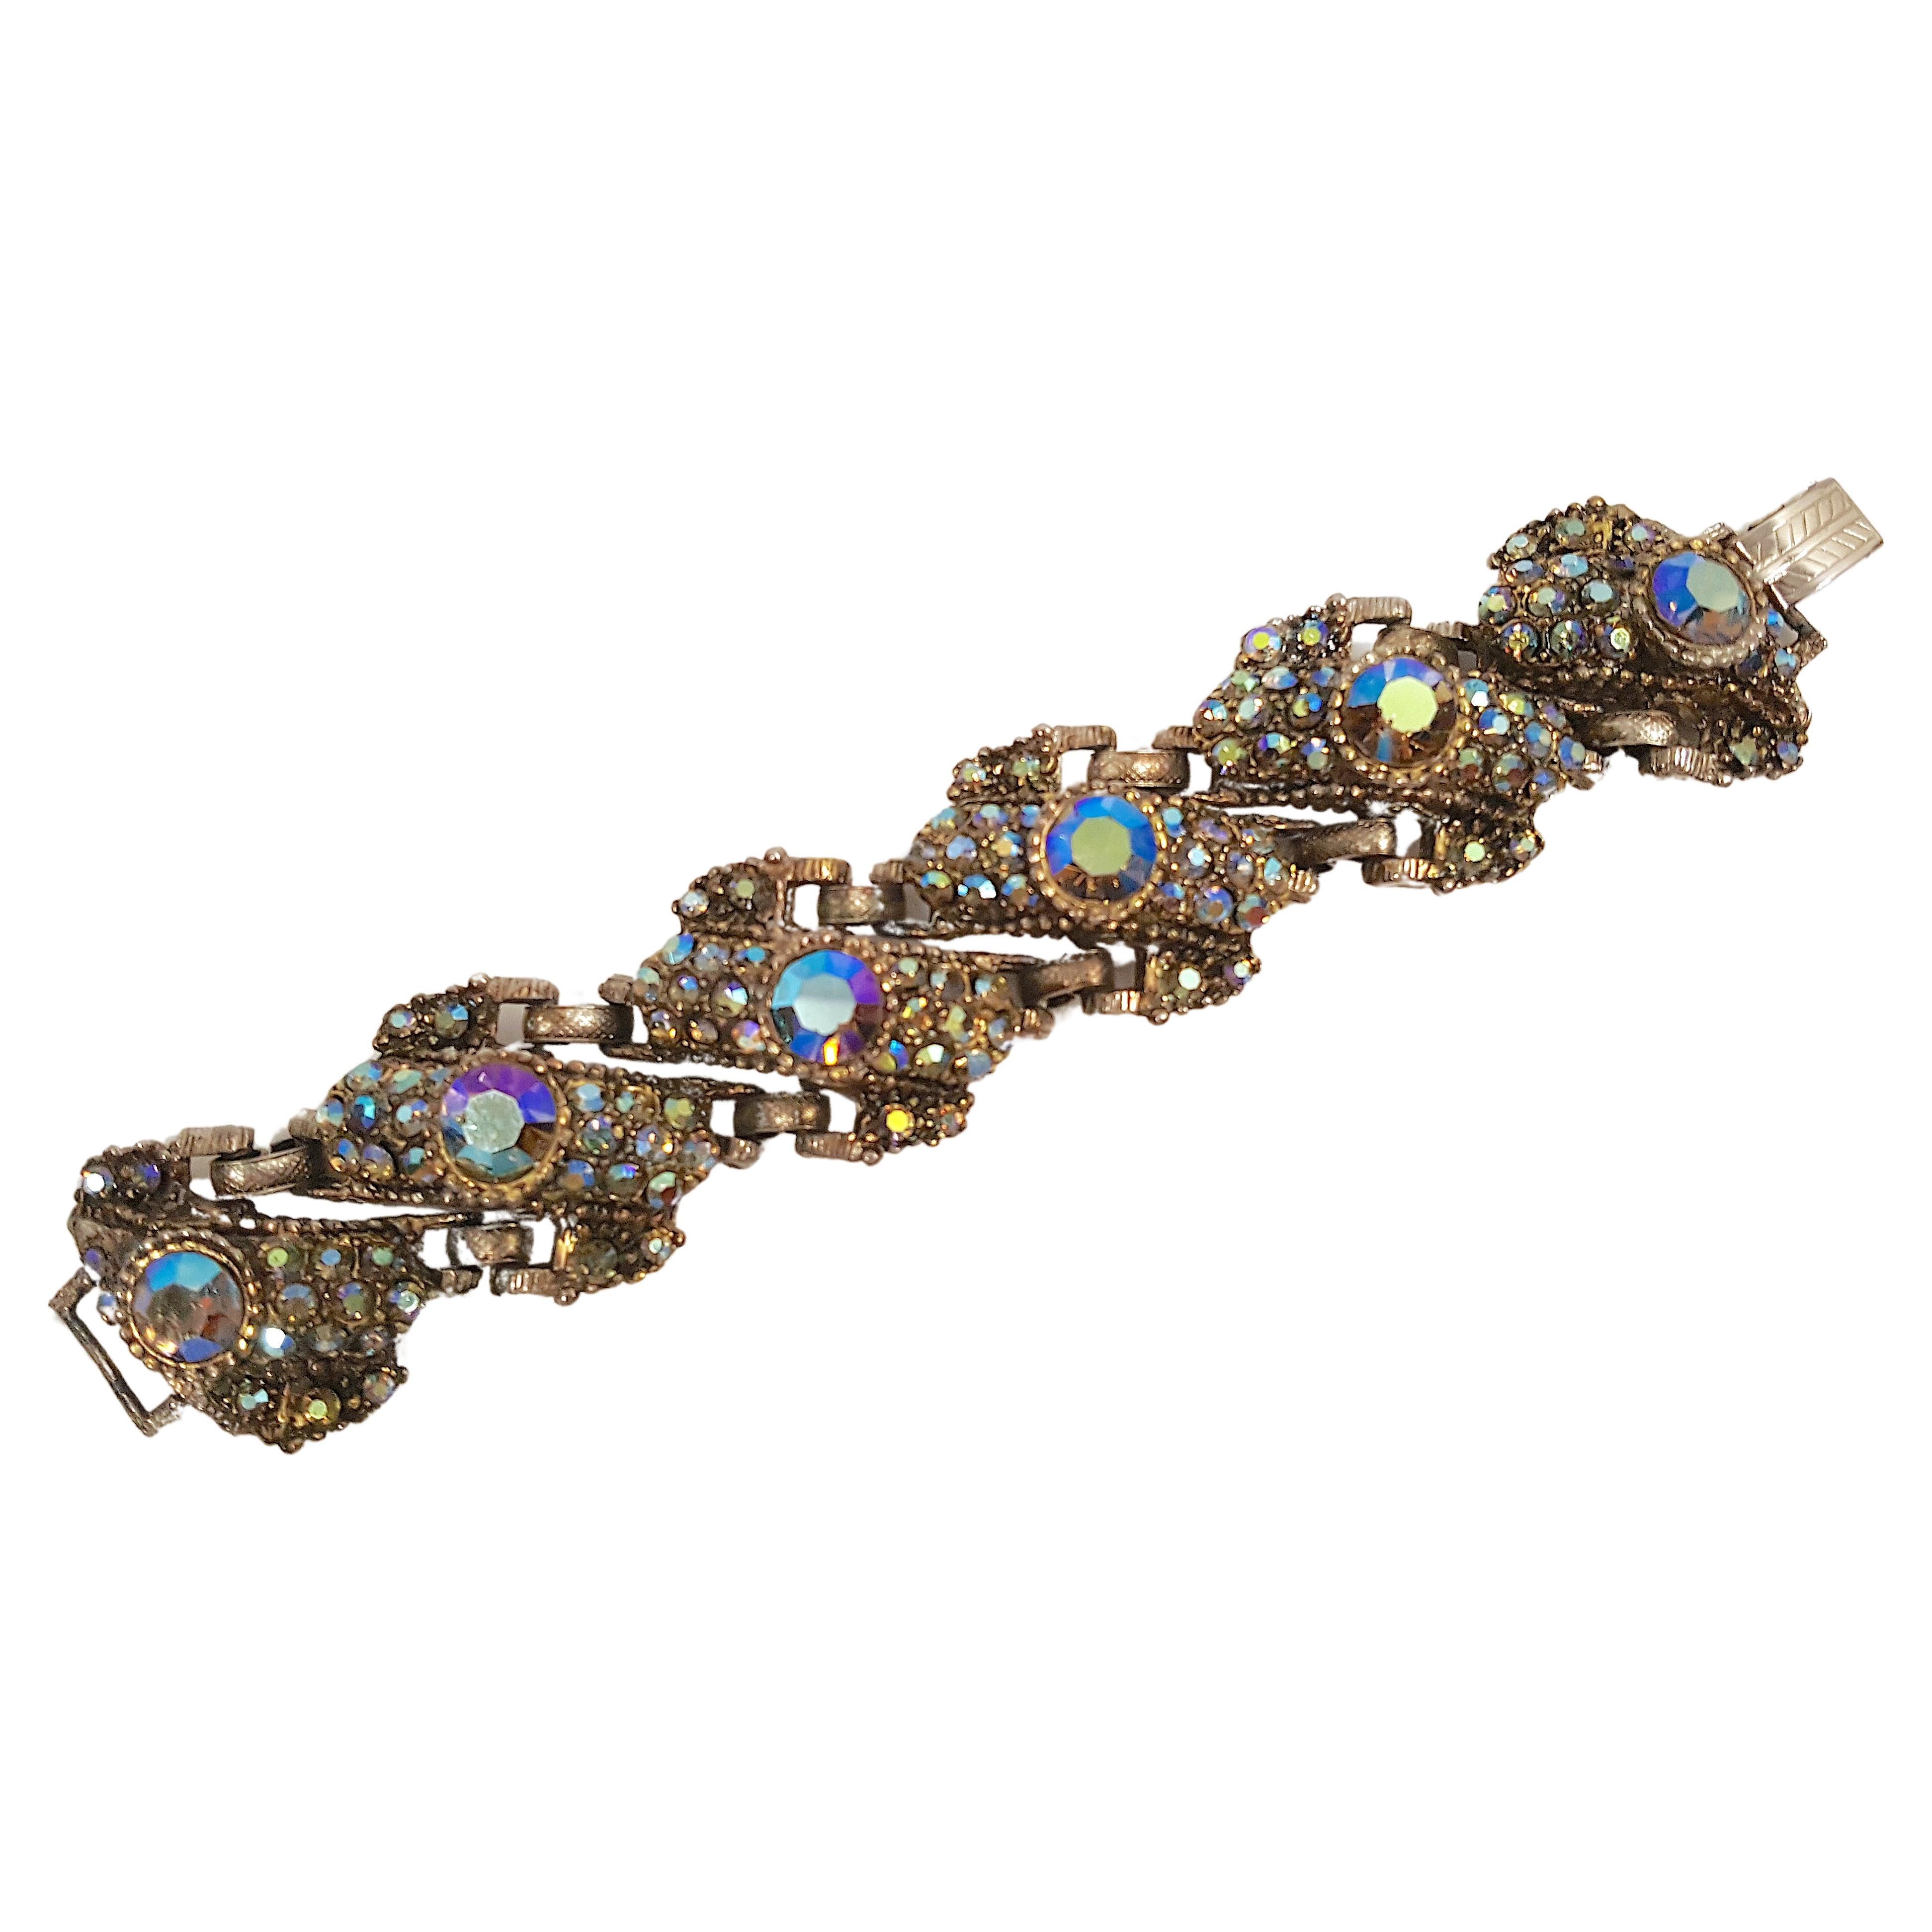 Les designers Delizza &New de New York ont créé à la fin du milieu du siècle dernier ce bracelet en bronze à six maillons, lourd et coloré, qui attire l'attention. Il est incrusté de cristaux aurores boréales (AB) de deux tailles, tous sertis dans